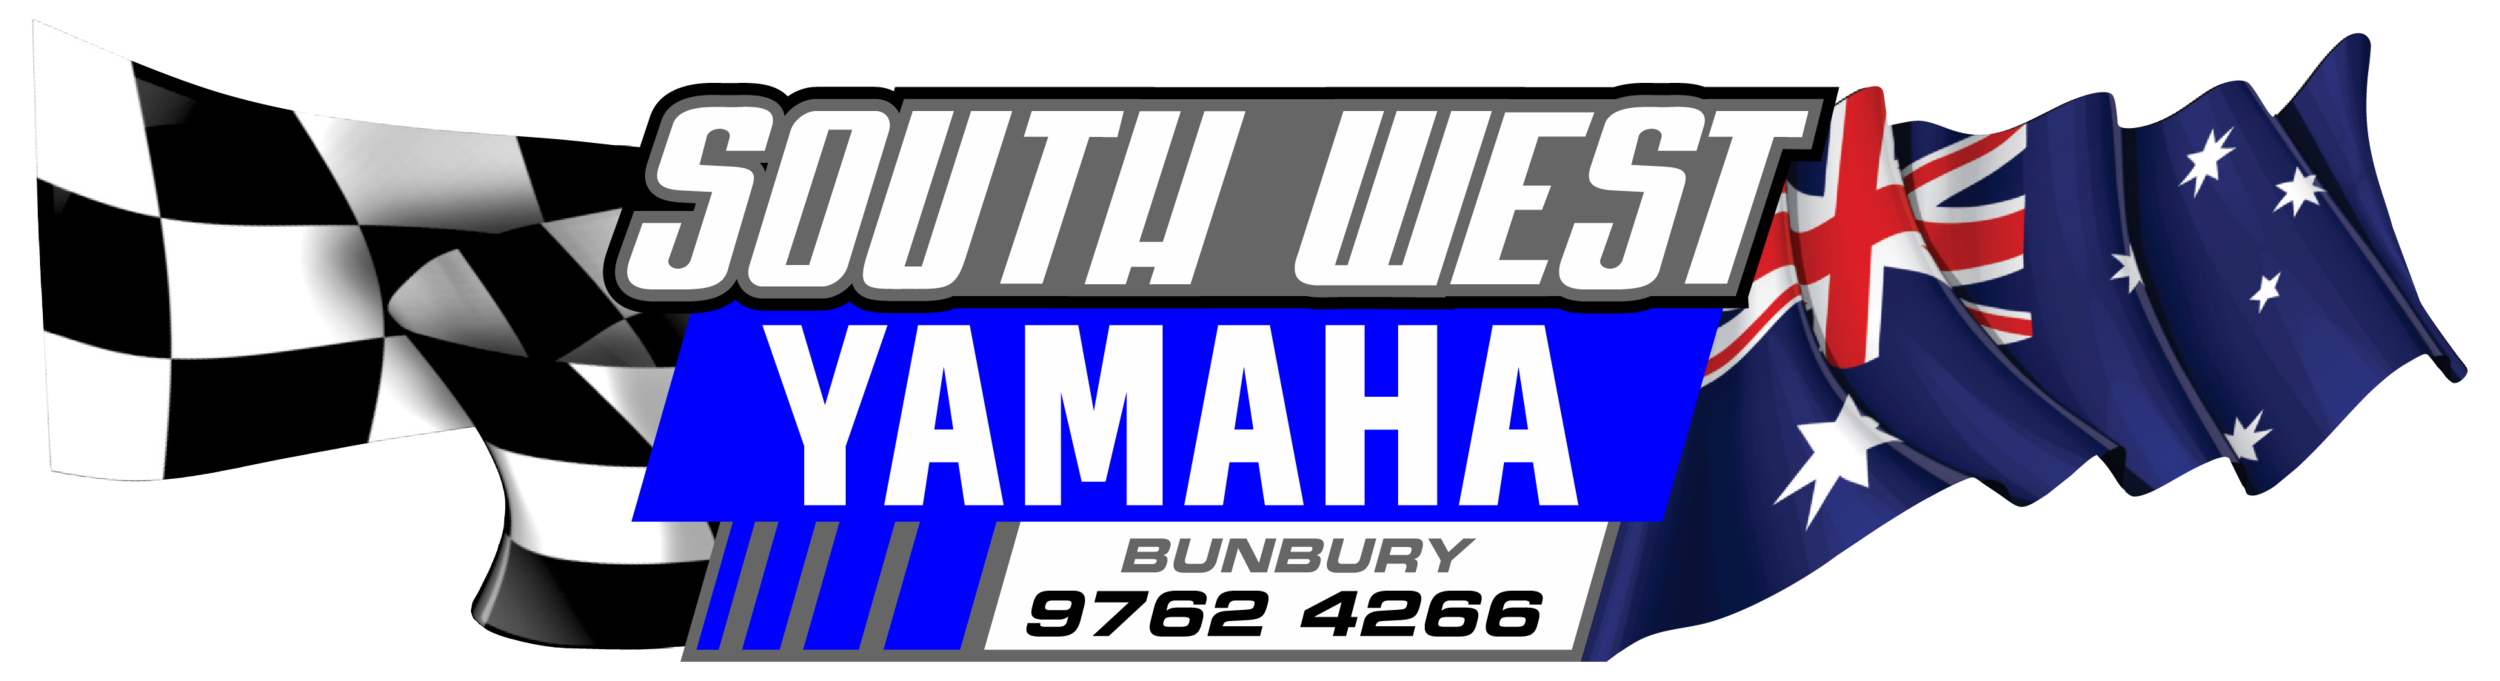 South West Yamaha